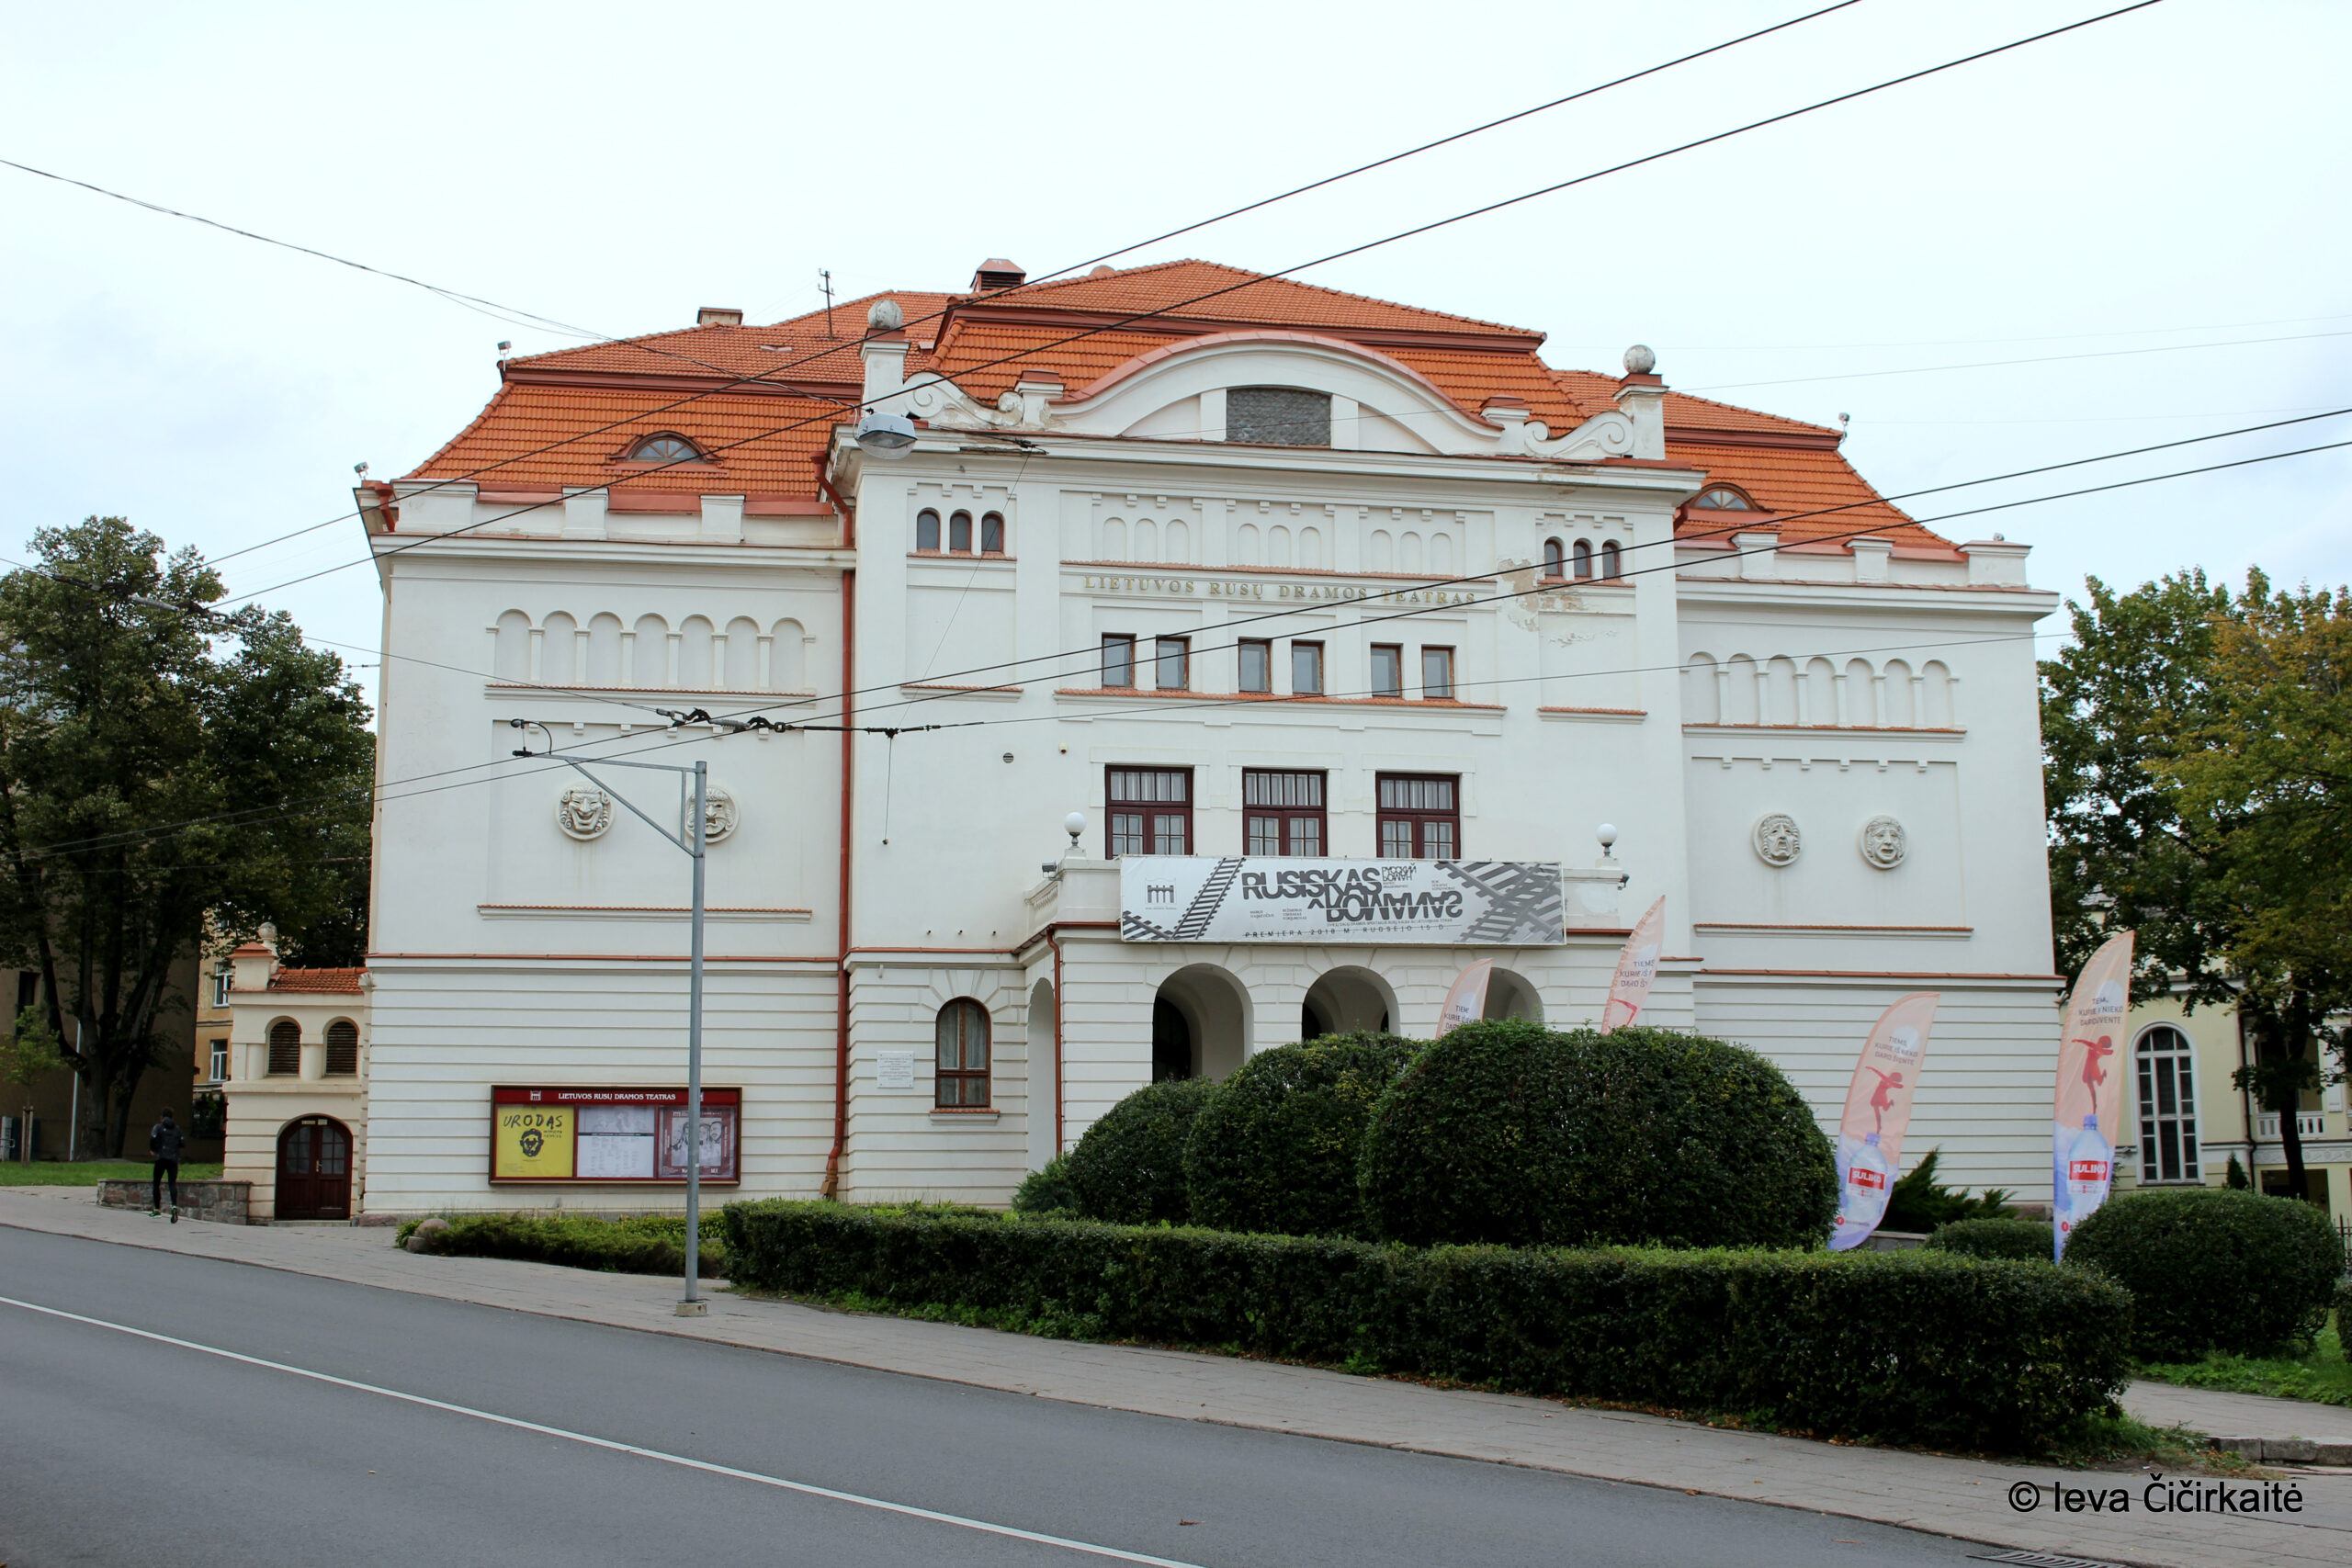 S. Kairys patvirtino naują Lietuvos rusų teatro pavadinimą – Vilniaus senasis teatras